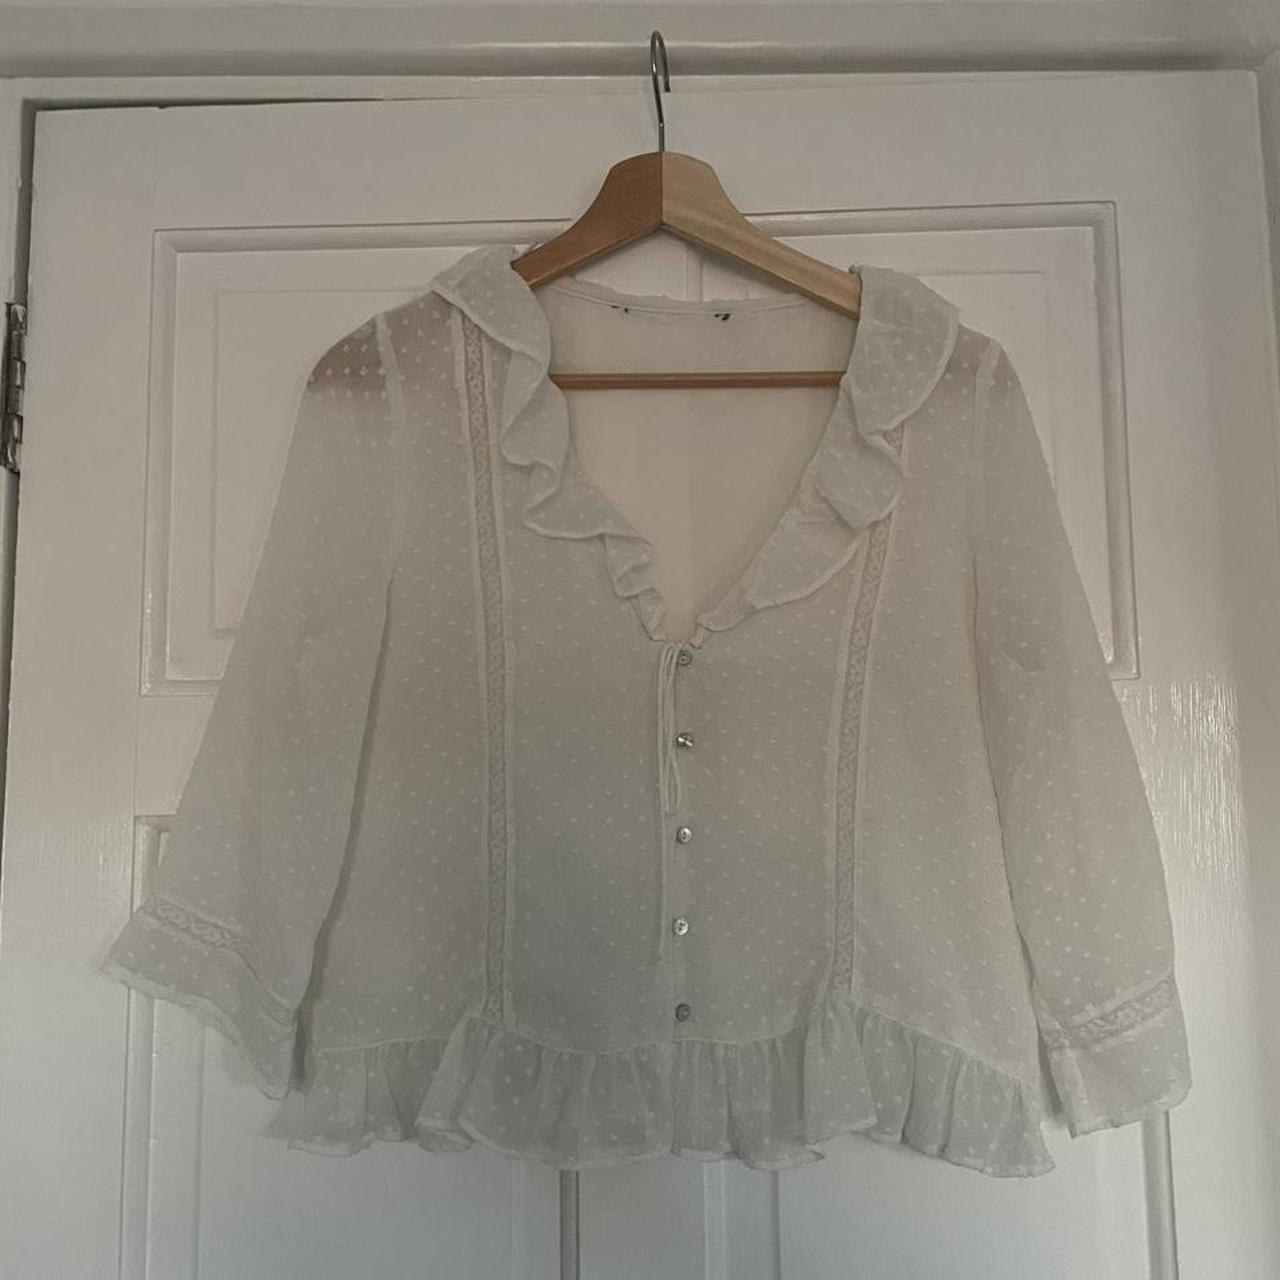 Zara sheer white blouse with dot pattern - Depop